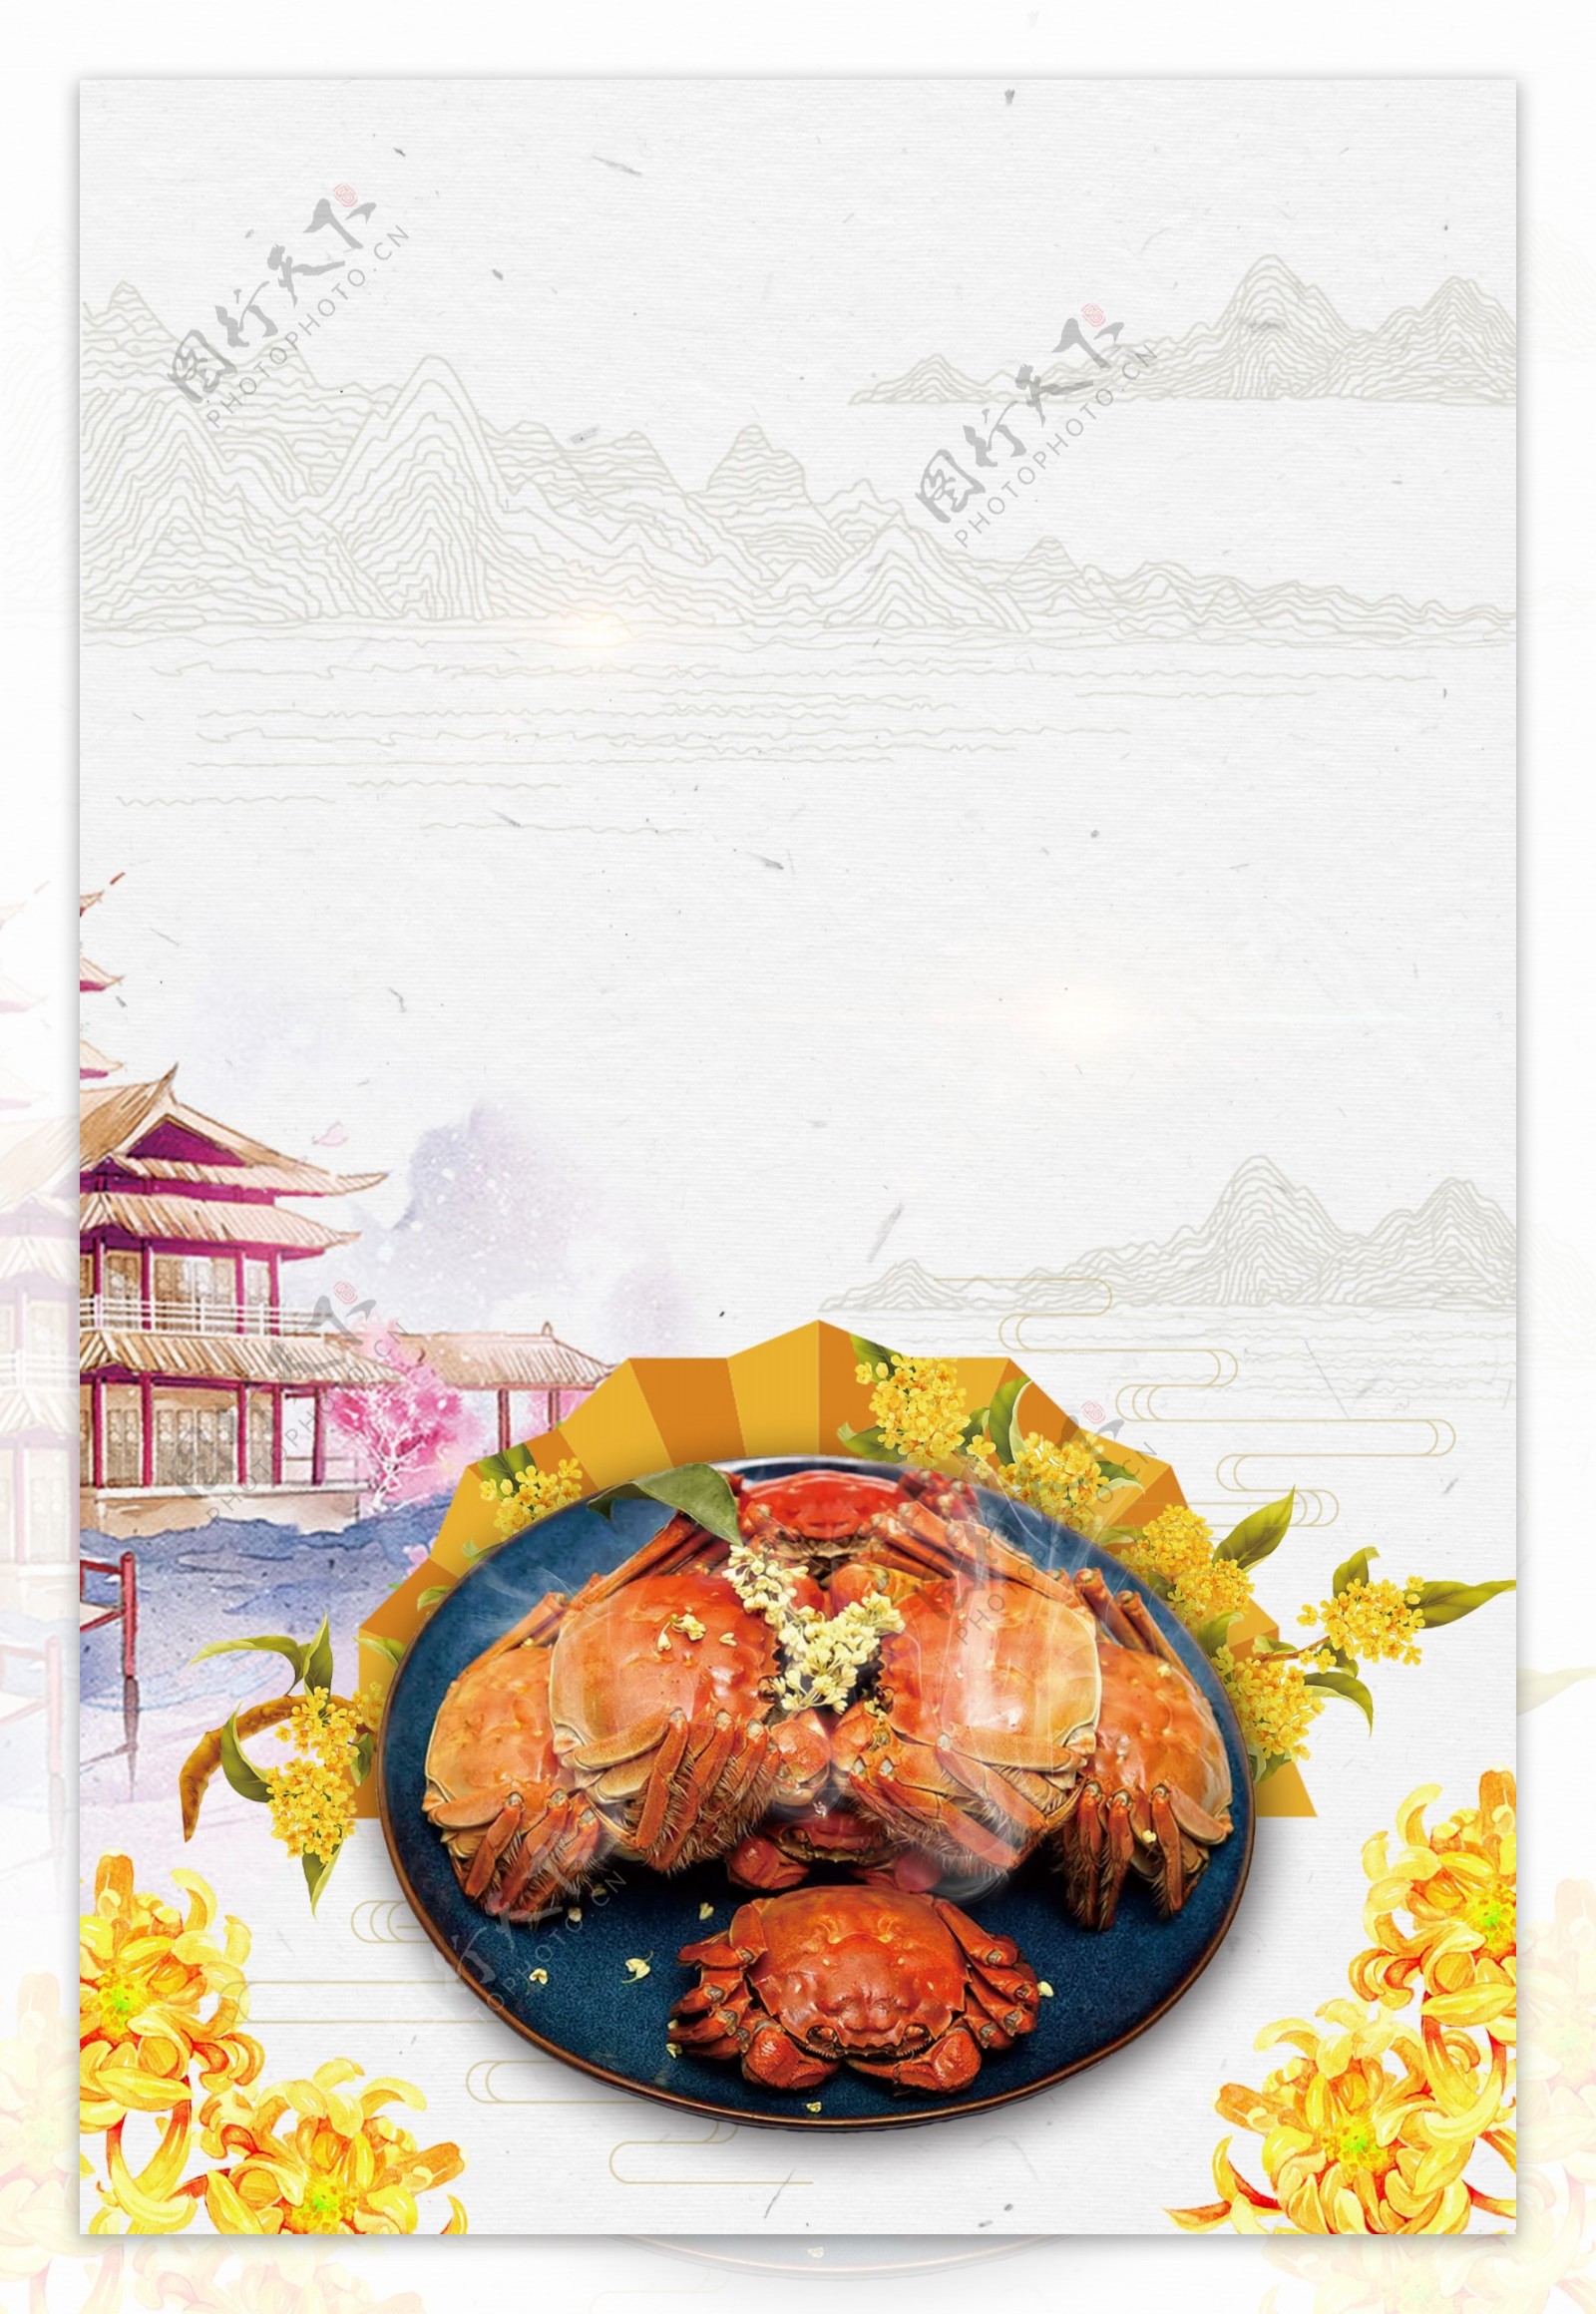 螃蟹中国风清新广告背景图